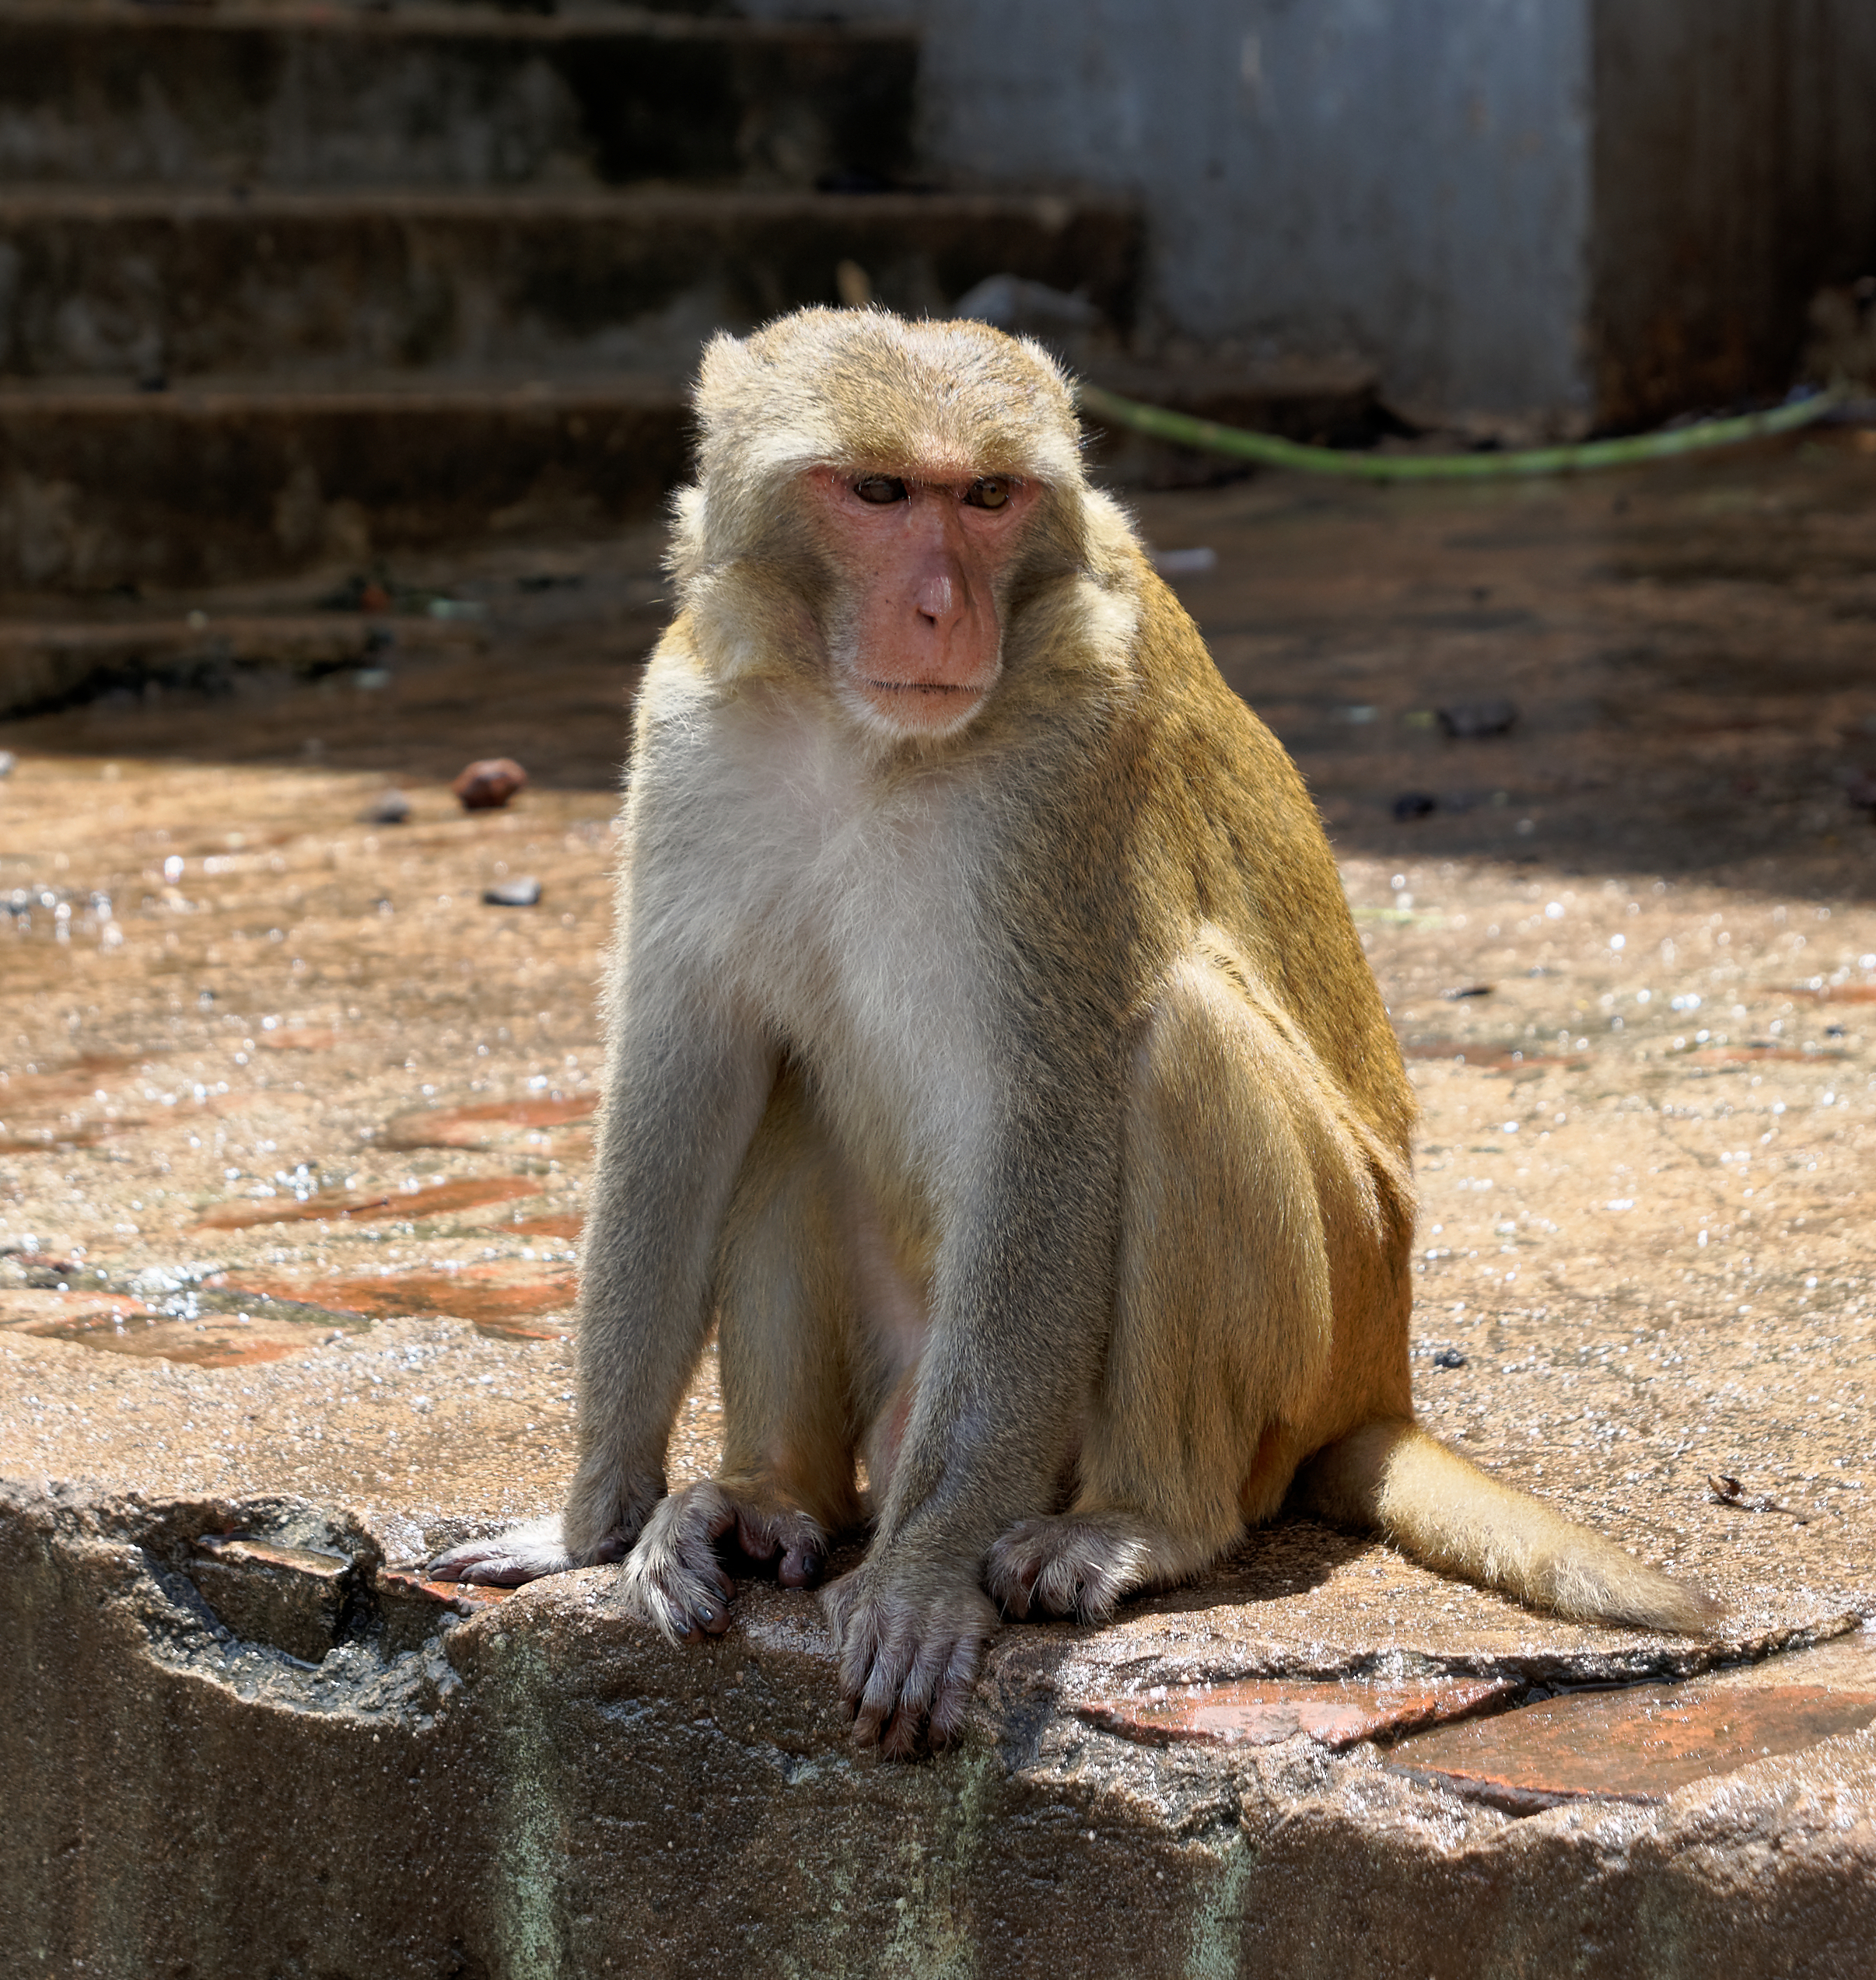 20160802 - Rhesus macaque - Mount Popa, Myanmar - 7178